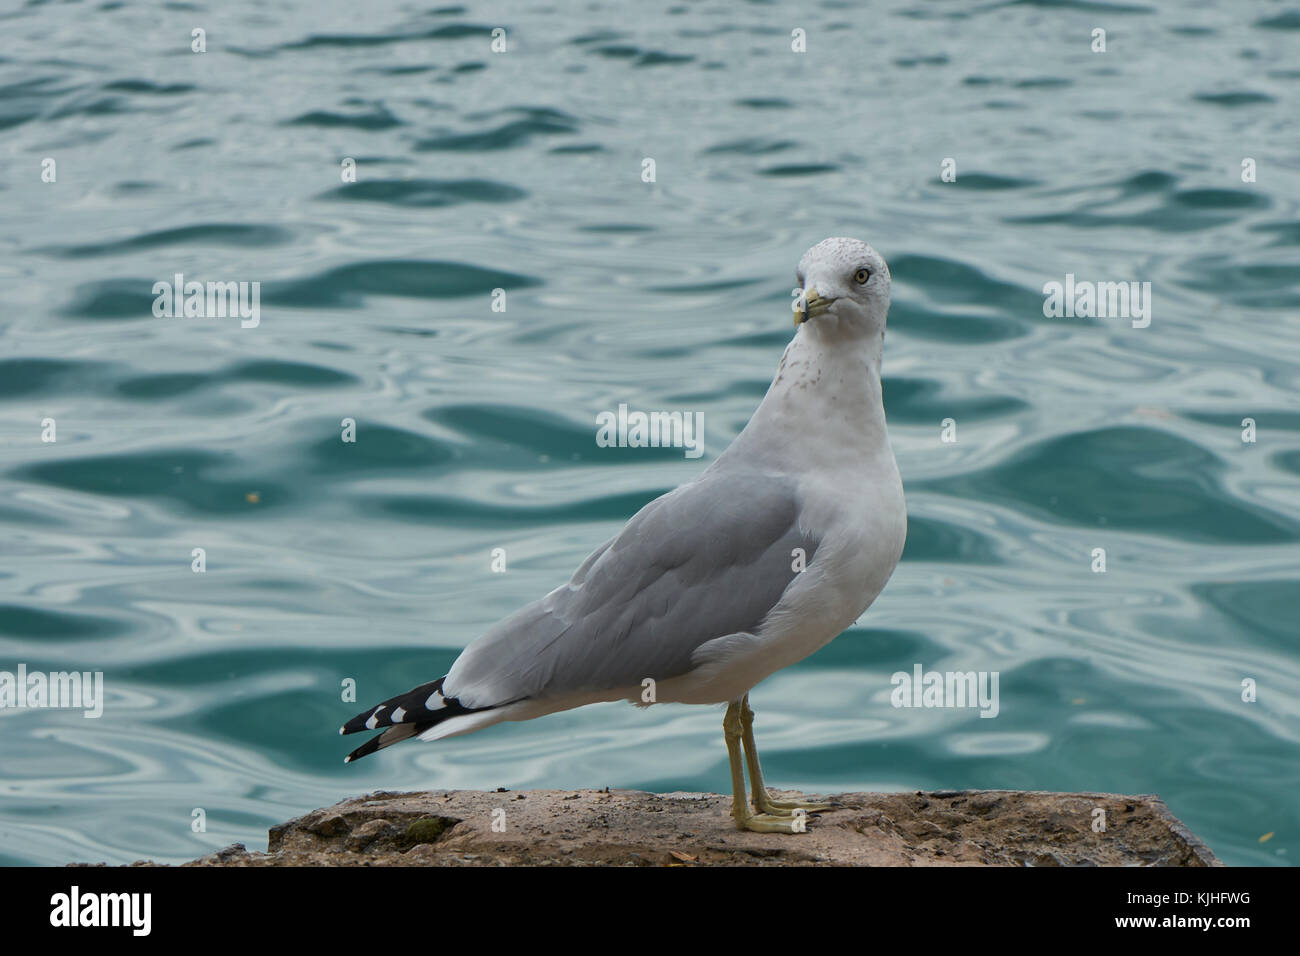 Close-up visualizza profilo grigio e bianco seagull di bianco e nero con motivi geometrici piume di coda, appollaiato sulla roccia con blu-verde acqua in background Foto Stock